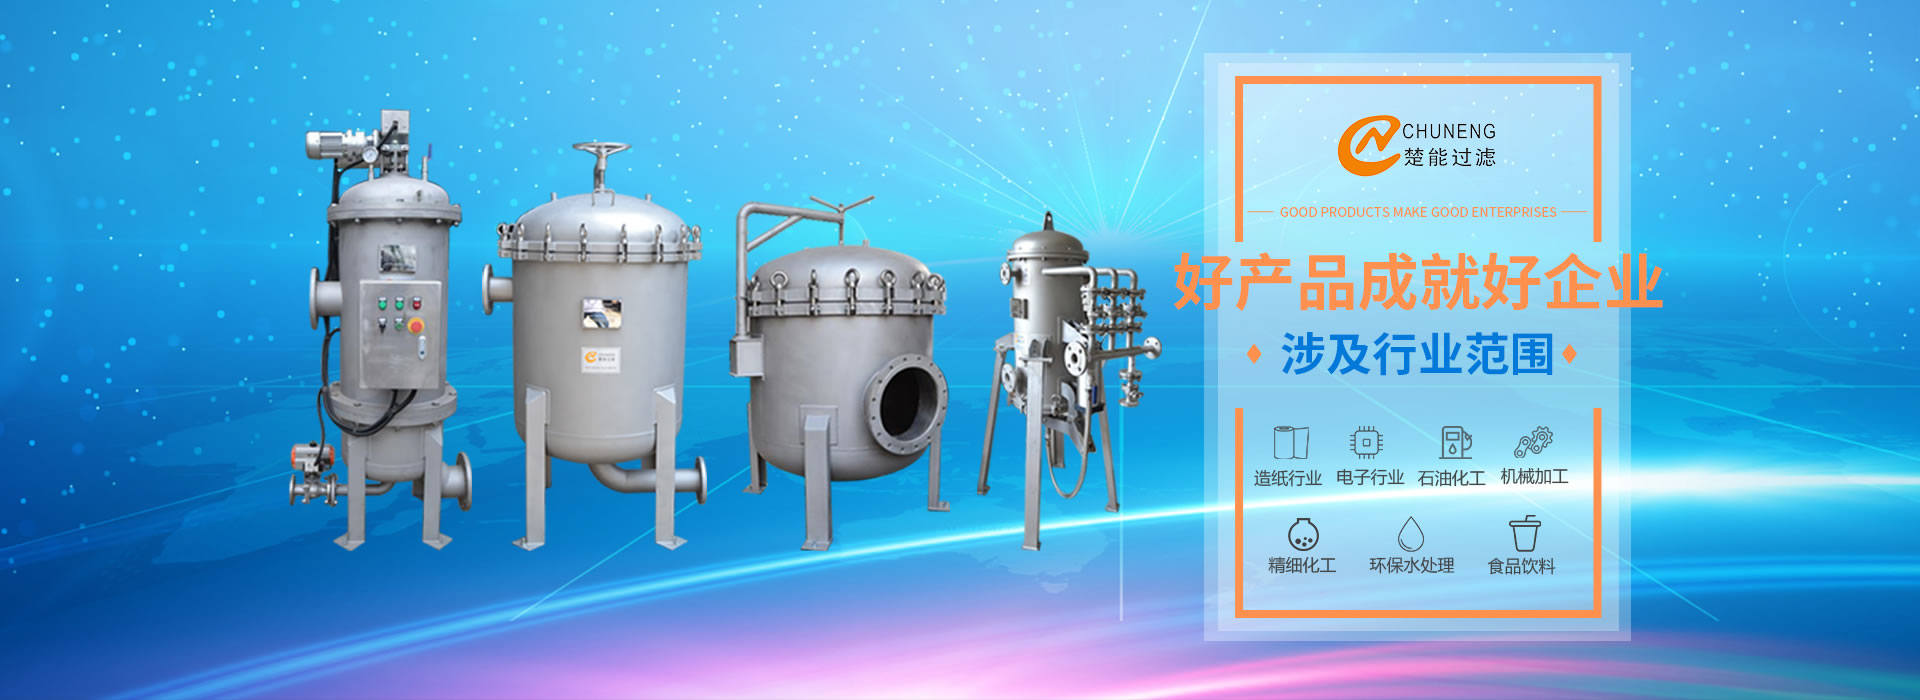 上海楚能工業過濾係統有限公司是集研發、製造、銷售/服務於一體的過濾設備與過濾元件專業生產廠家